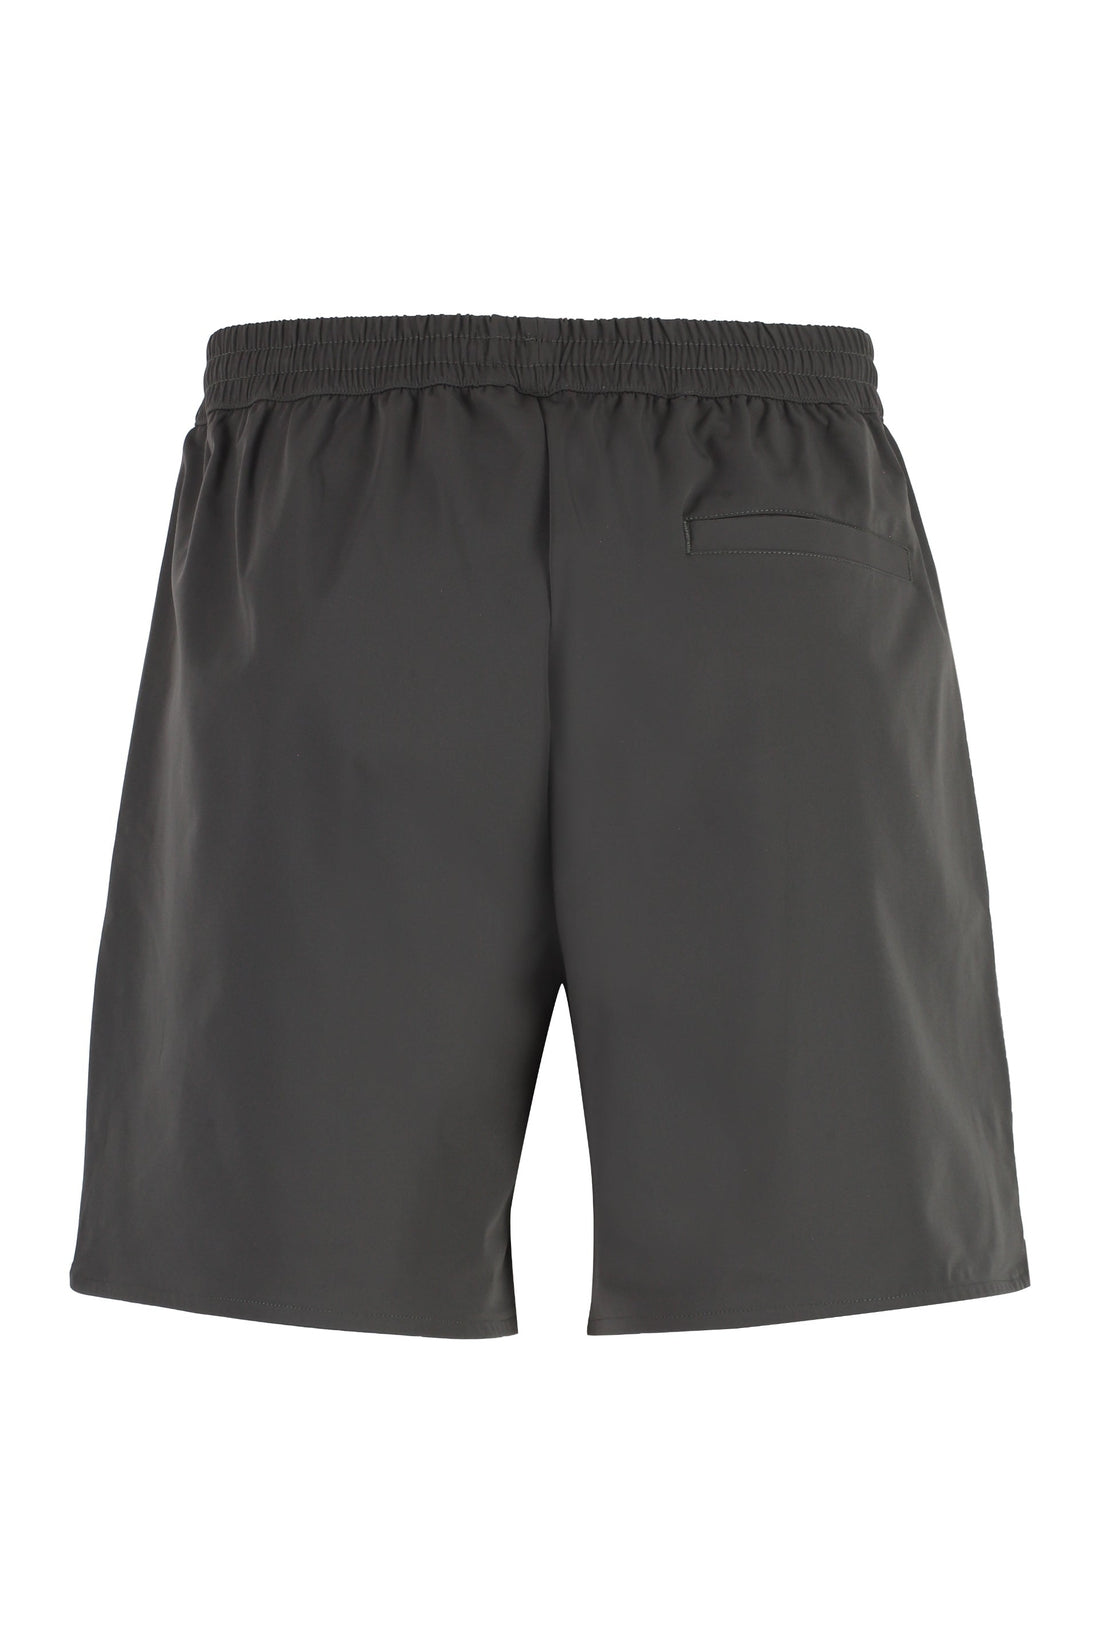 Les Deux-OUTLET-SALE-Raphael nylon shorts-ARCHIVIST